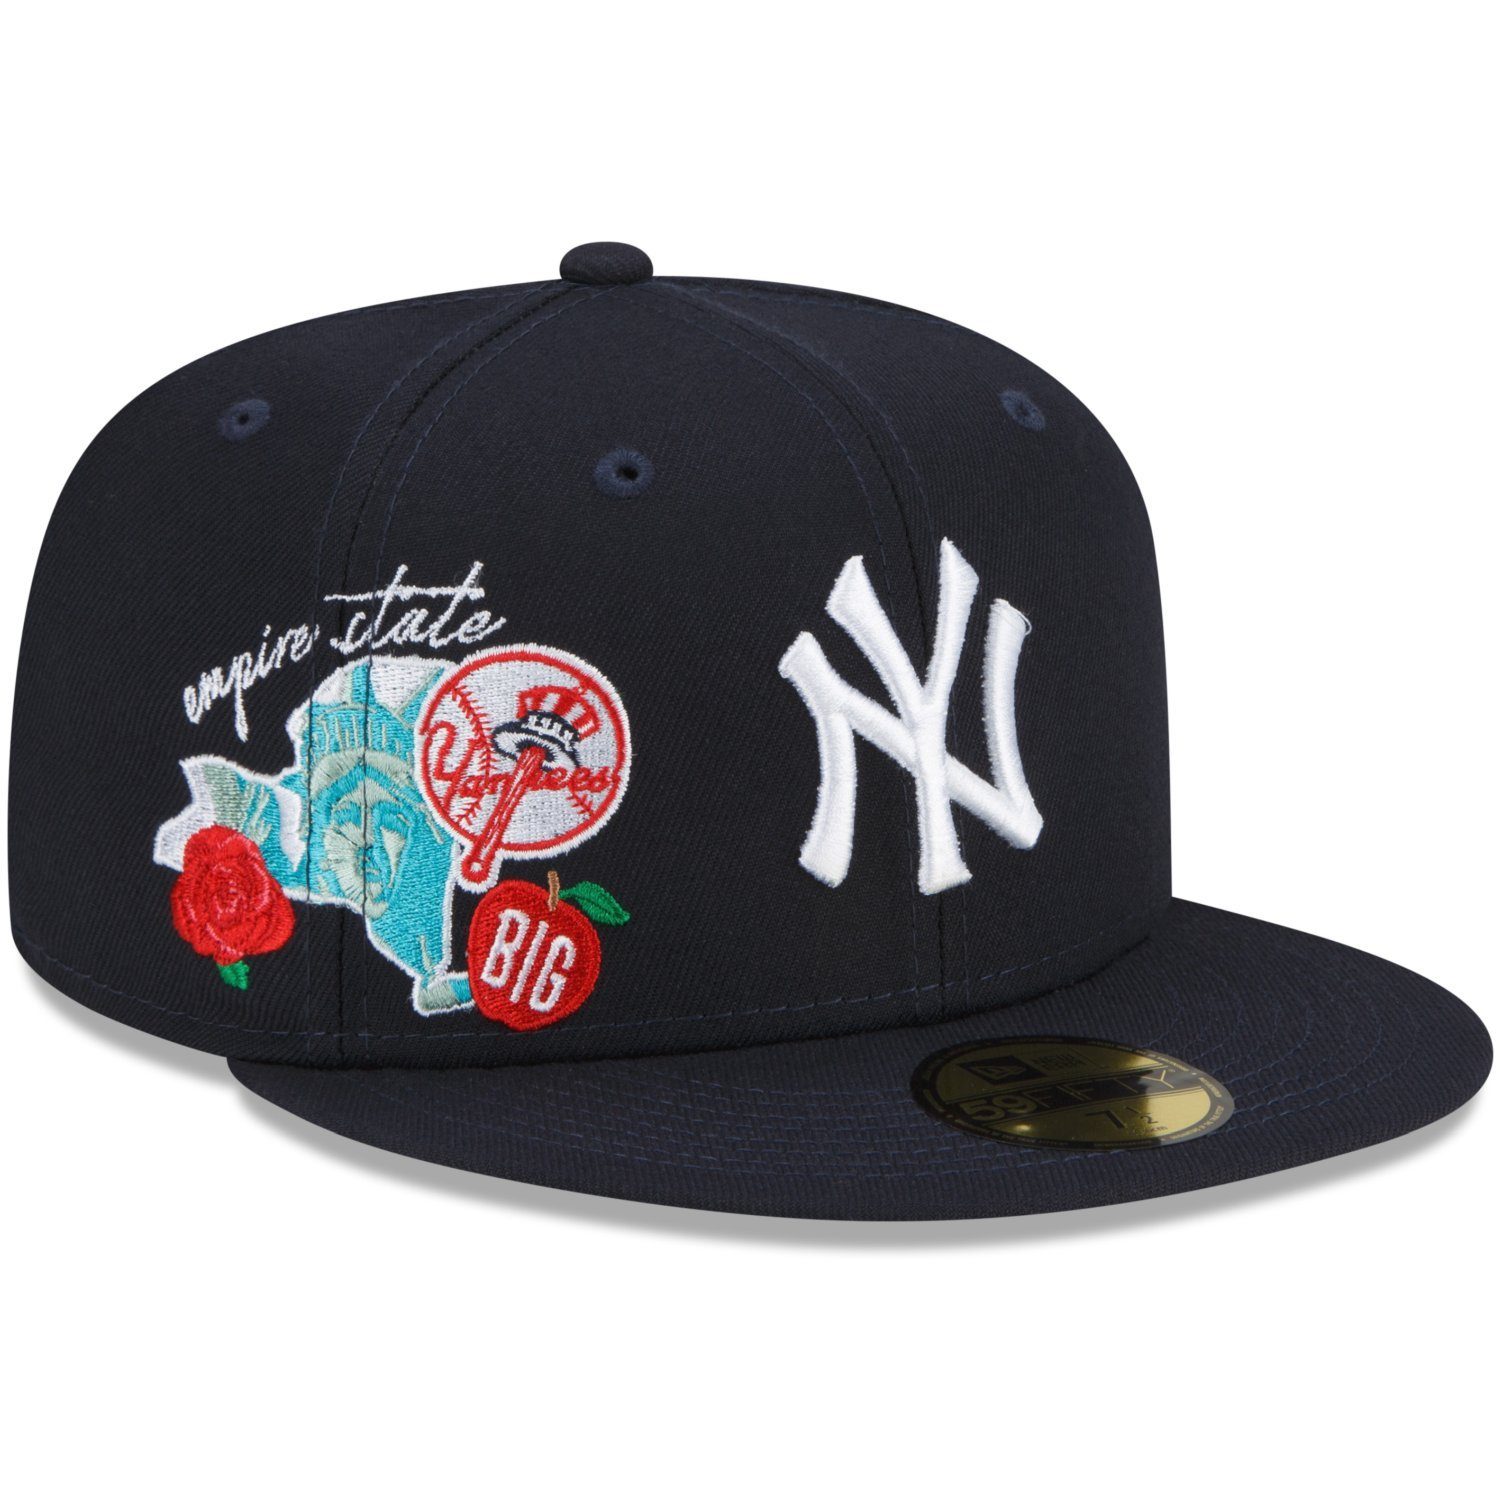 Neuzugänge diese Woche New Era Fitted Cap Yankees CITY 59Fifty CLUSTER New York